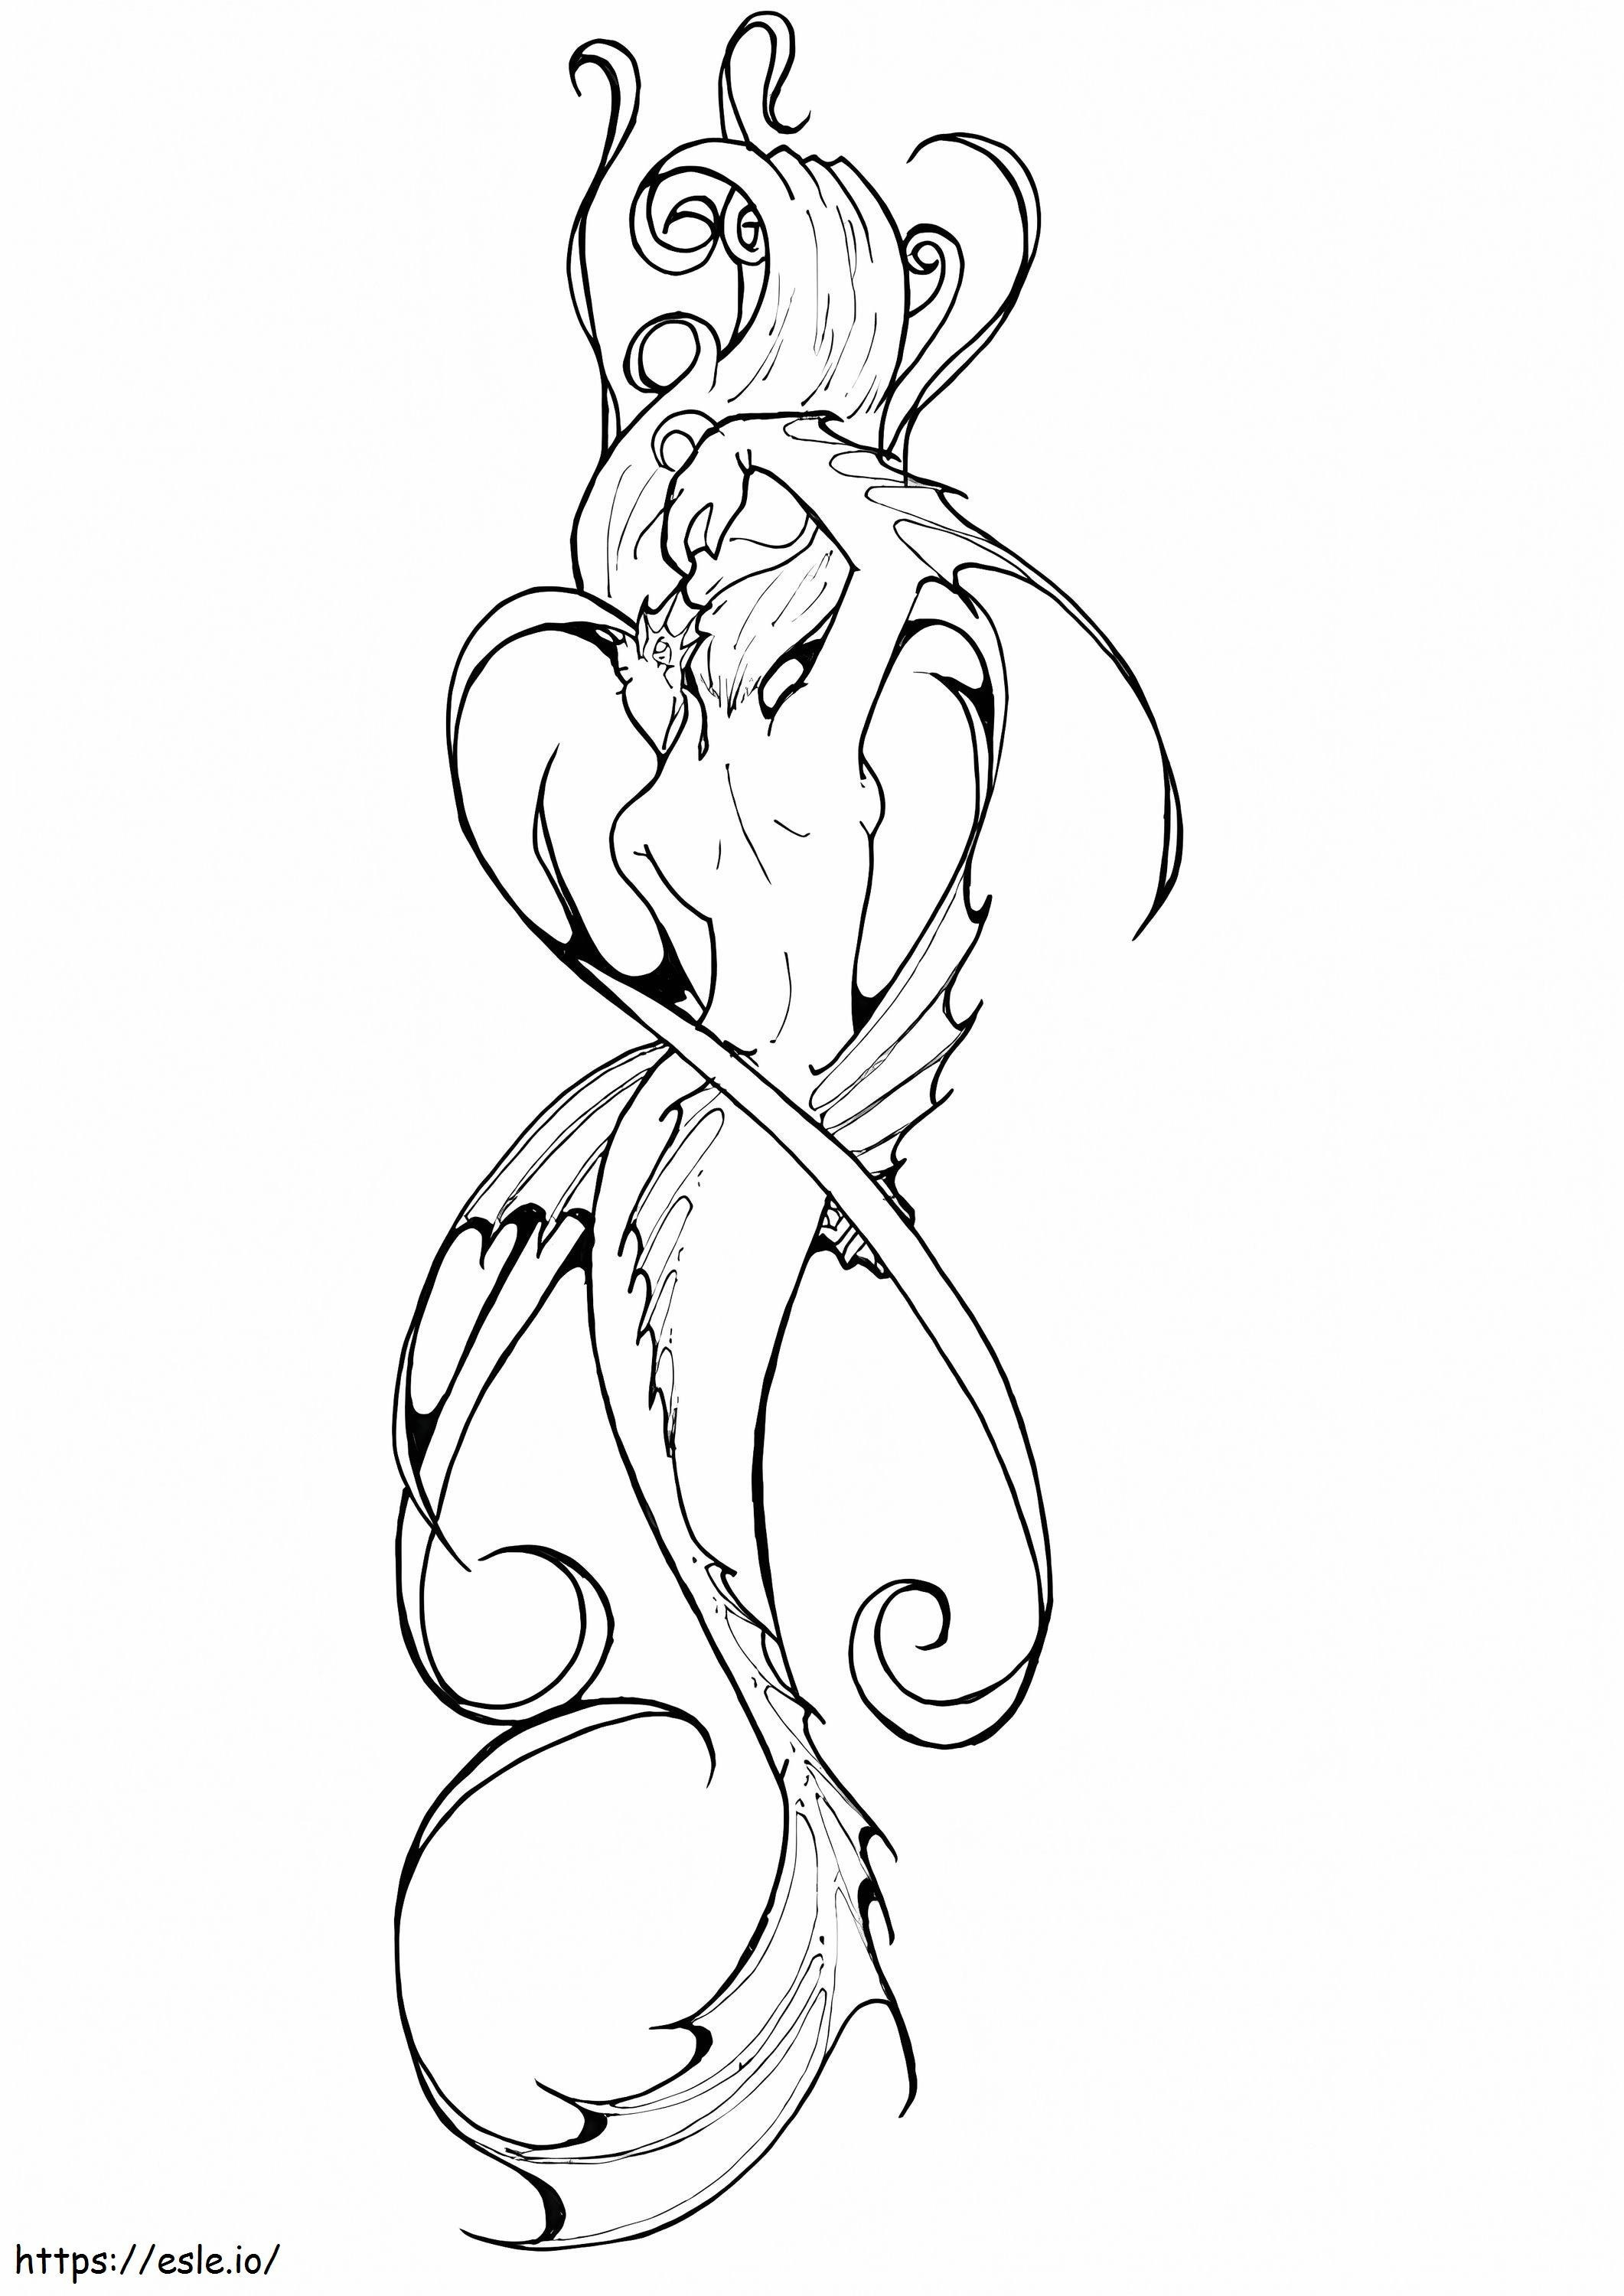 Meerjungfrau-Tattoo ausmalbilder